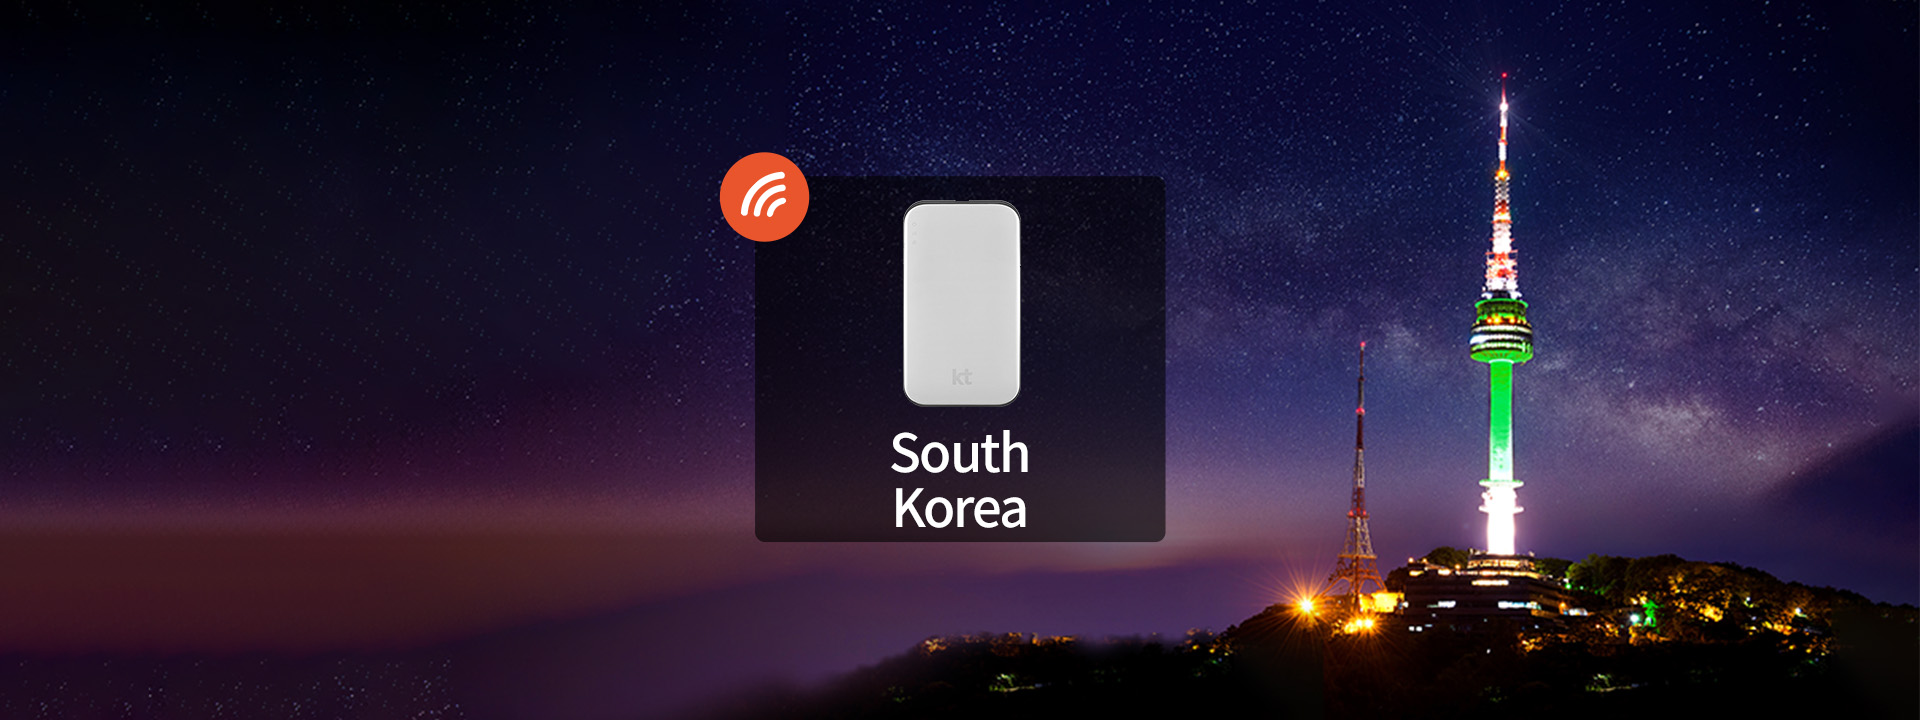 【促銷】韓國KT Olleh 4G隨身WiFi（韓國機場領取）